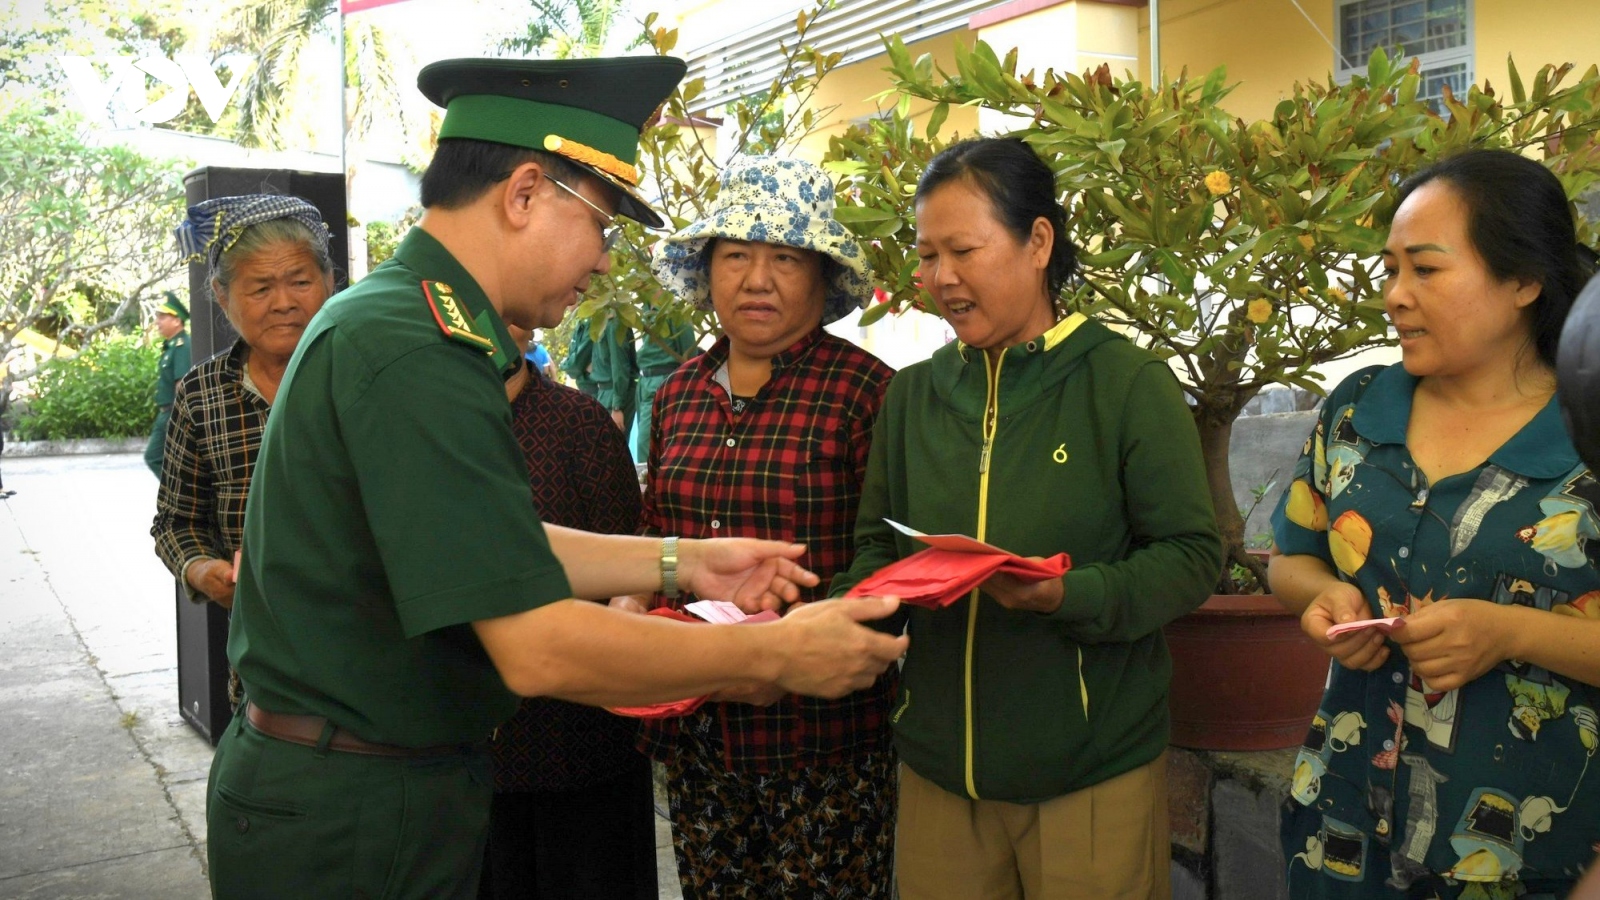 Bộ đội Biên phòng mang xuân đến với người dân vùng biên Tây Ninh